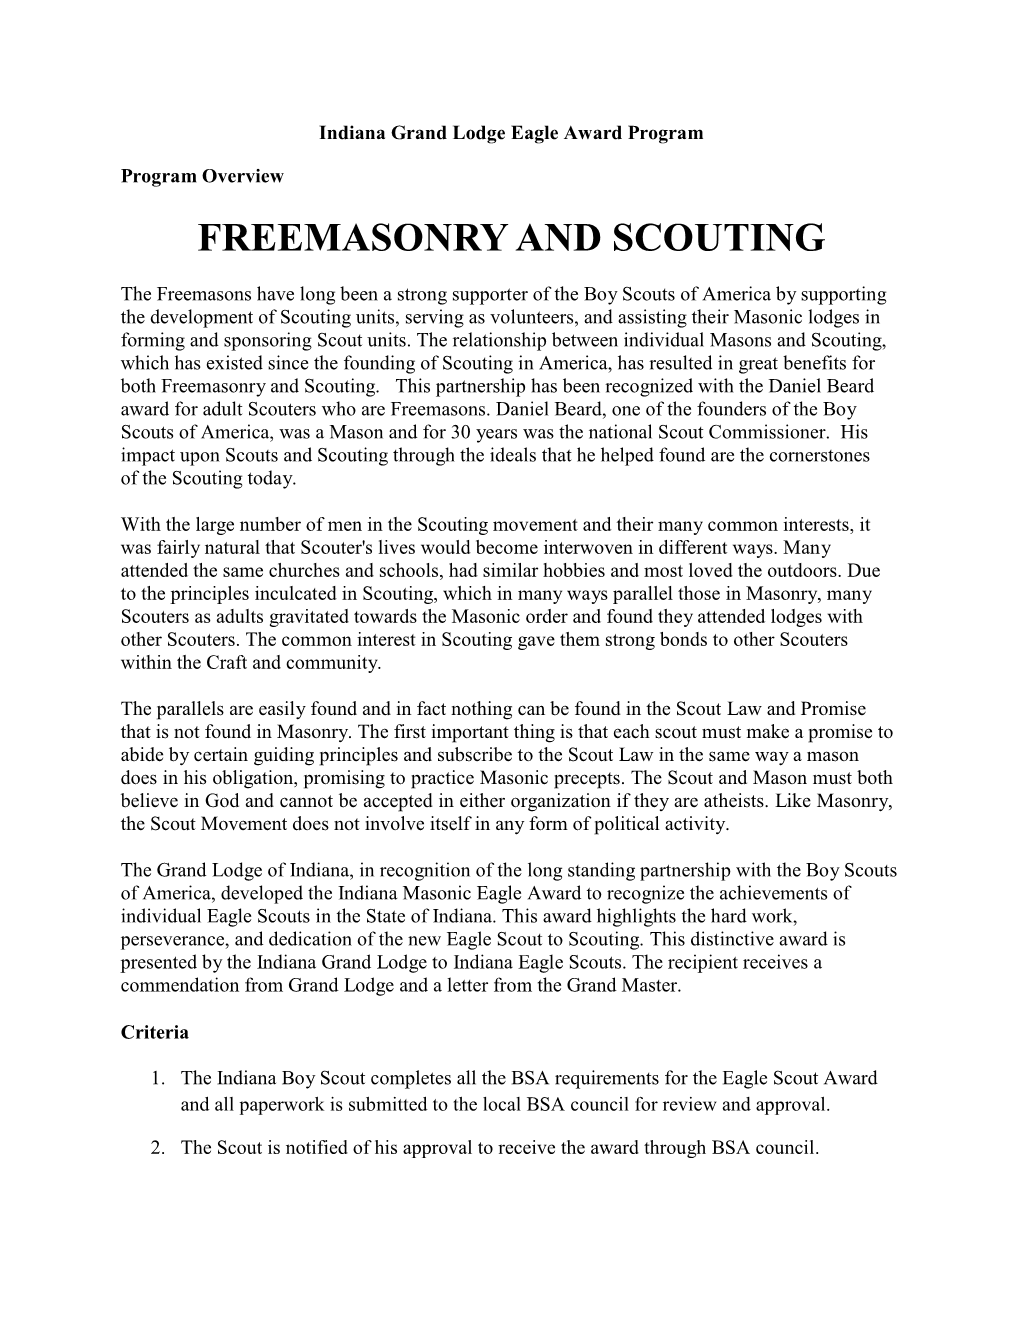 Freemasonry and Scouting